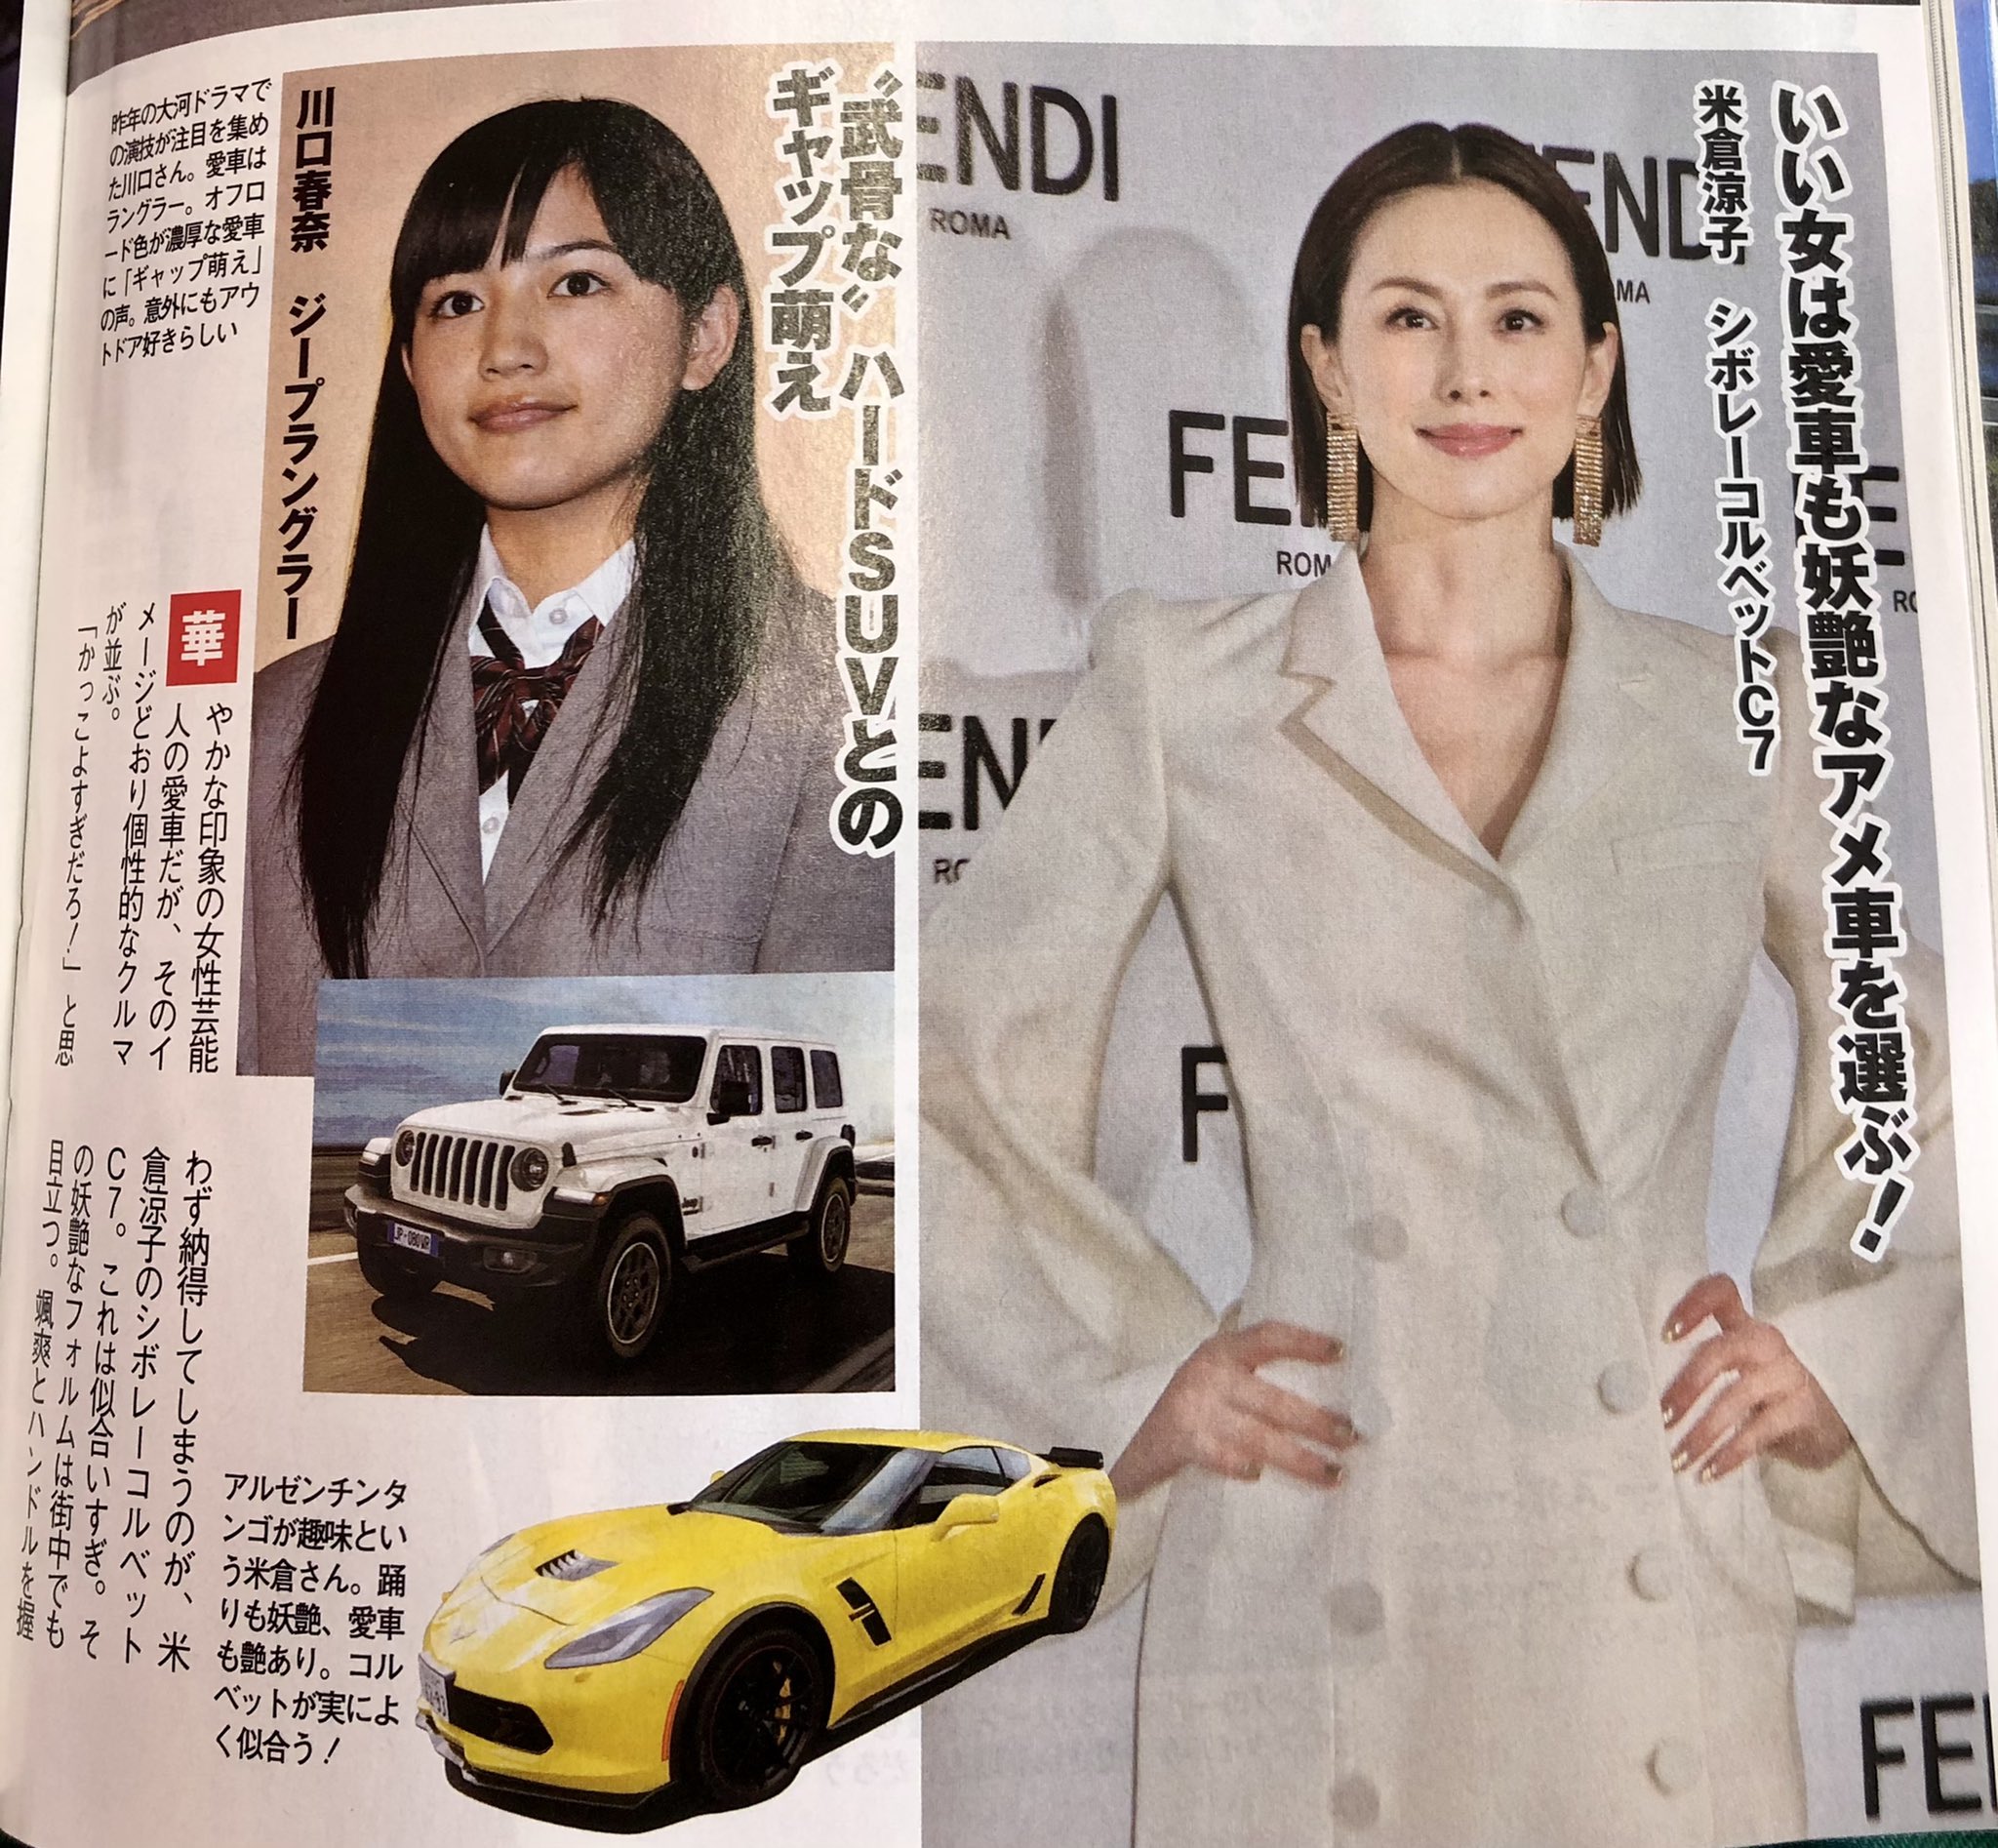 Tsugio Matsuda ベストカーの記事で 有名人の愛車紹介が 米倉涼子 さんが シボレーコルベットc7に乗ってる またマニアックな車に乗ってますね 乗ってる所を見てみたい 女性のスポーツカー 格好いい